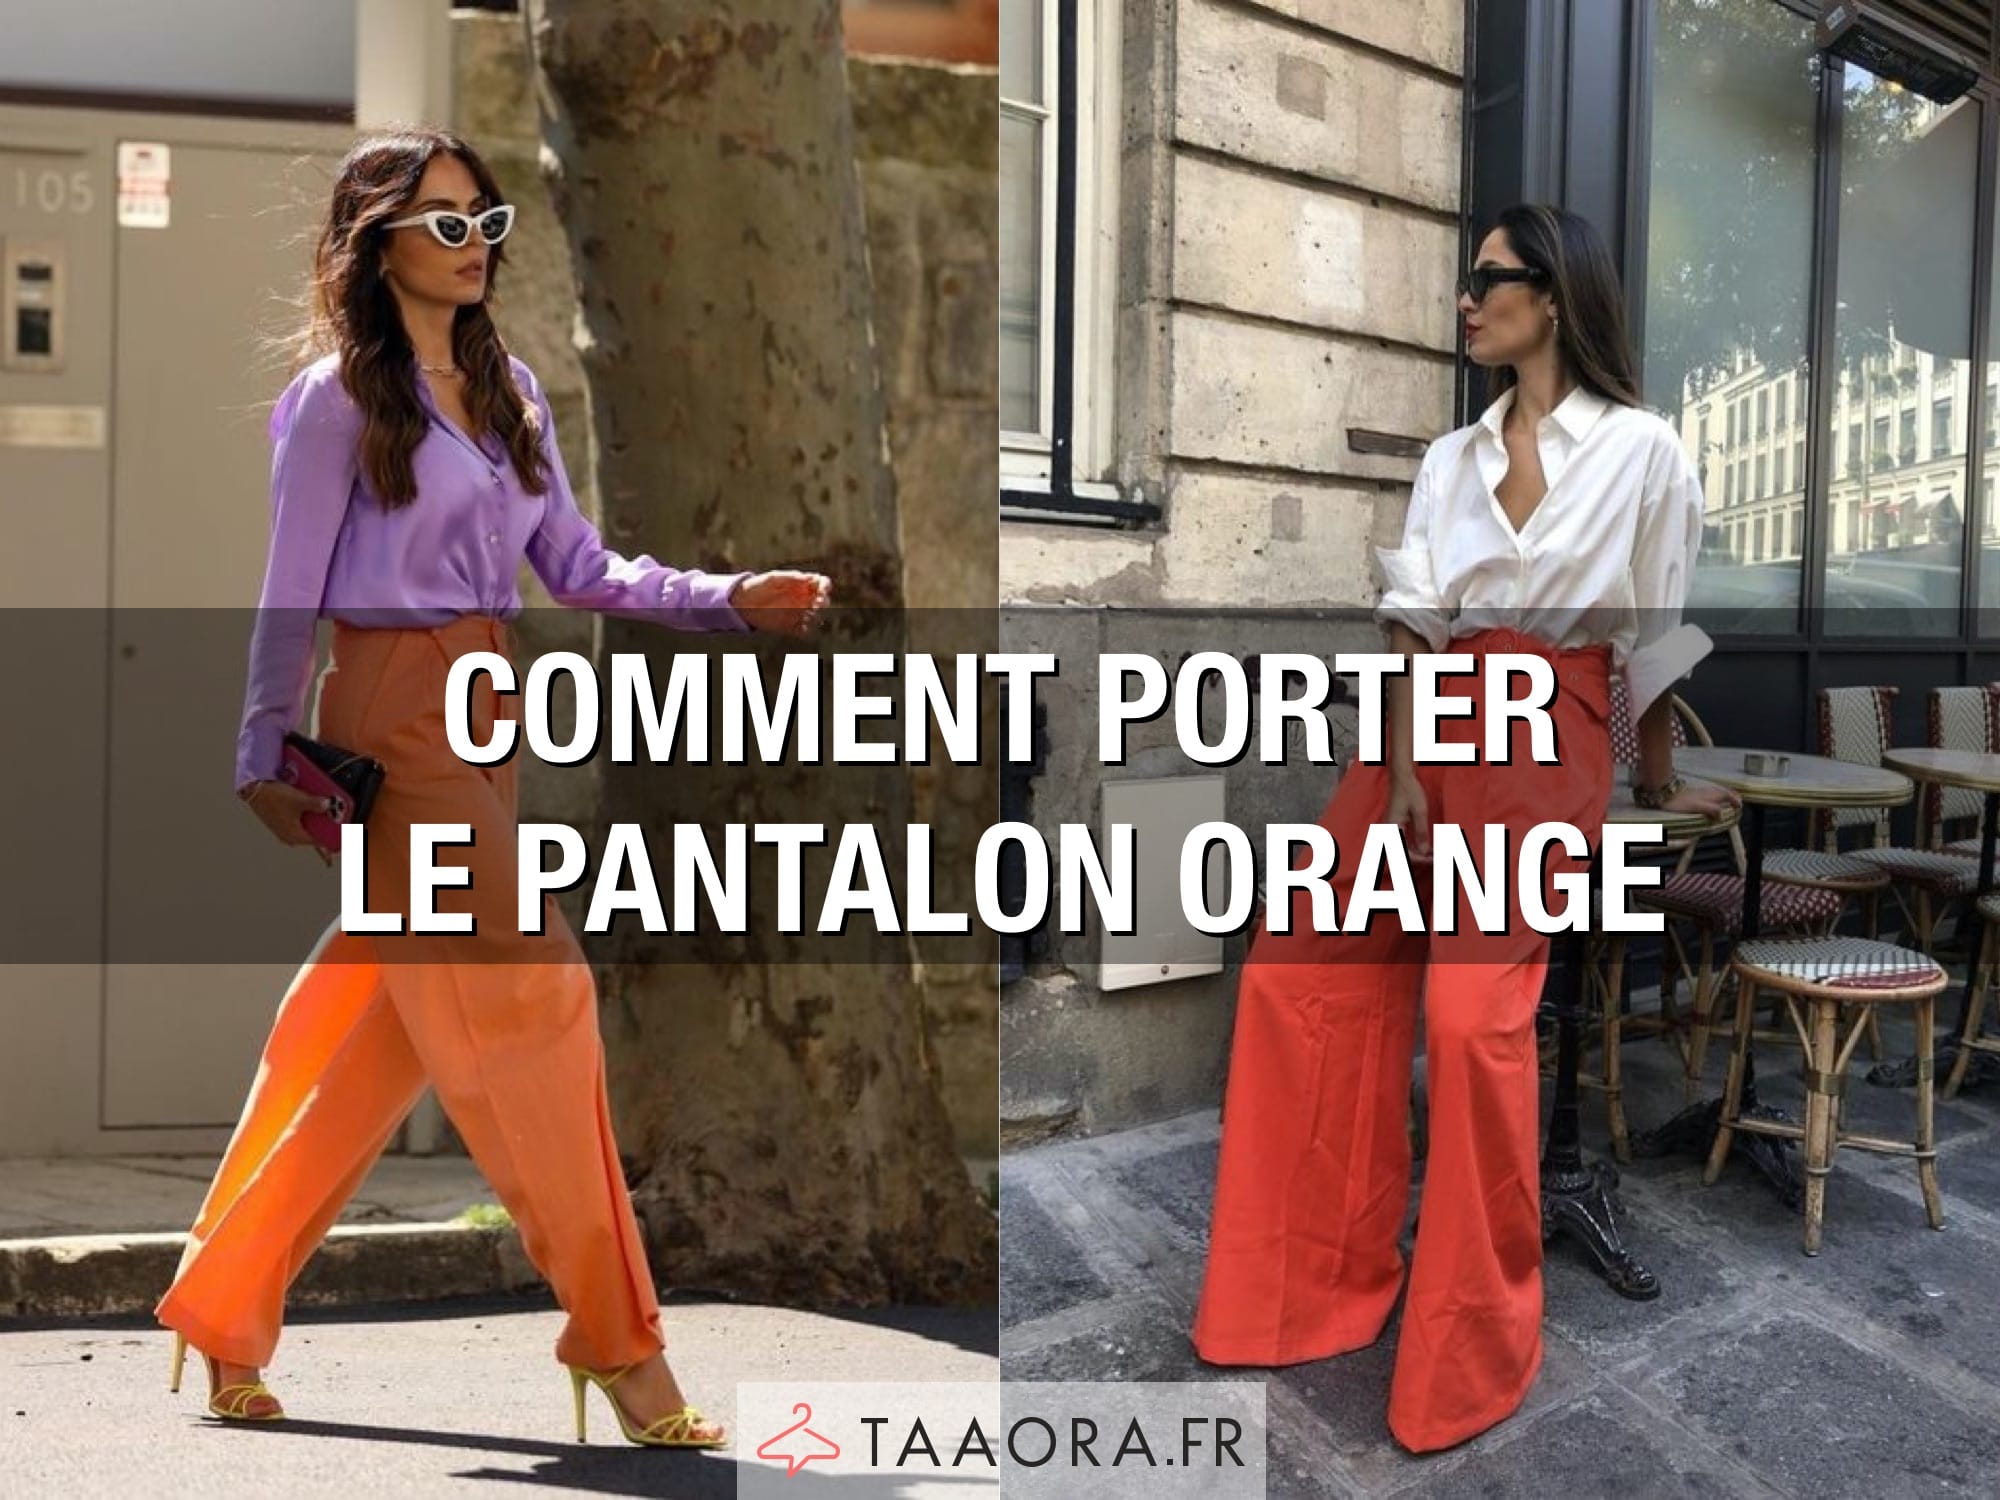 Comment porter le pantalon orange femme ?